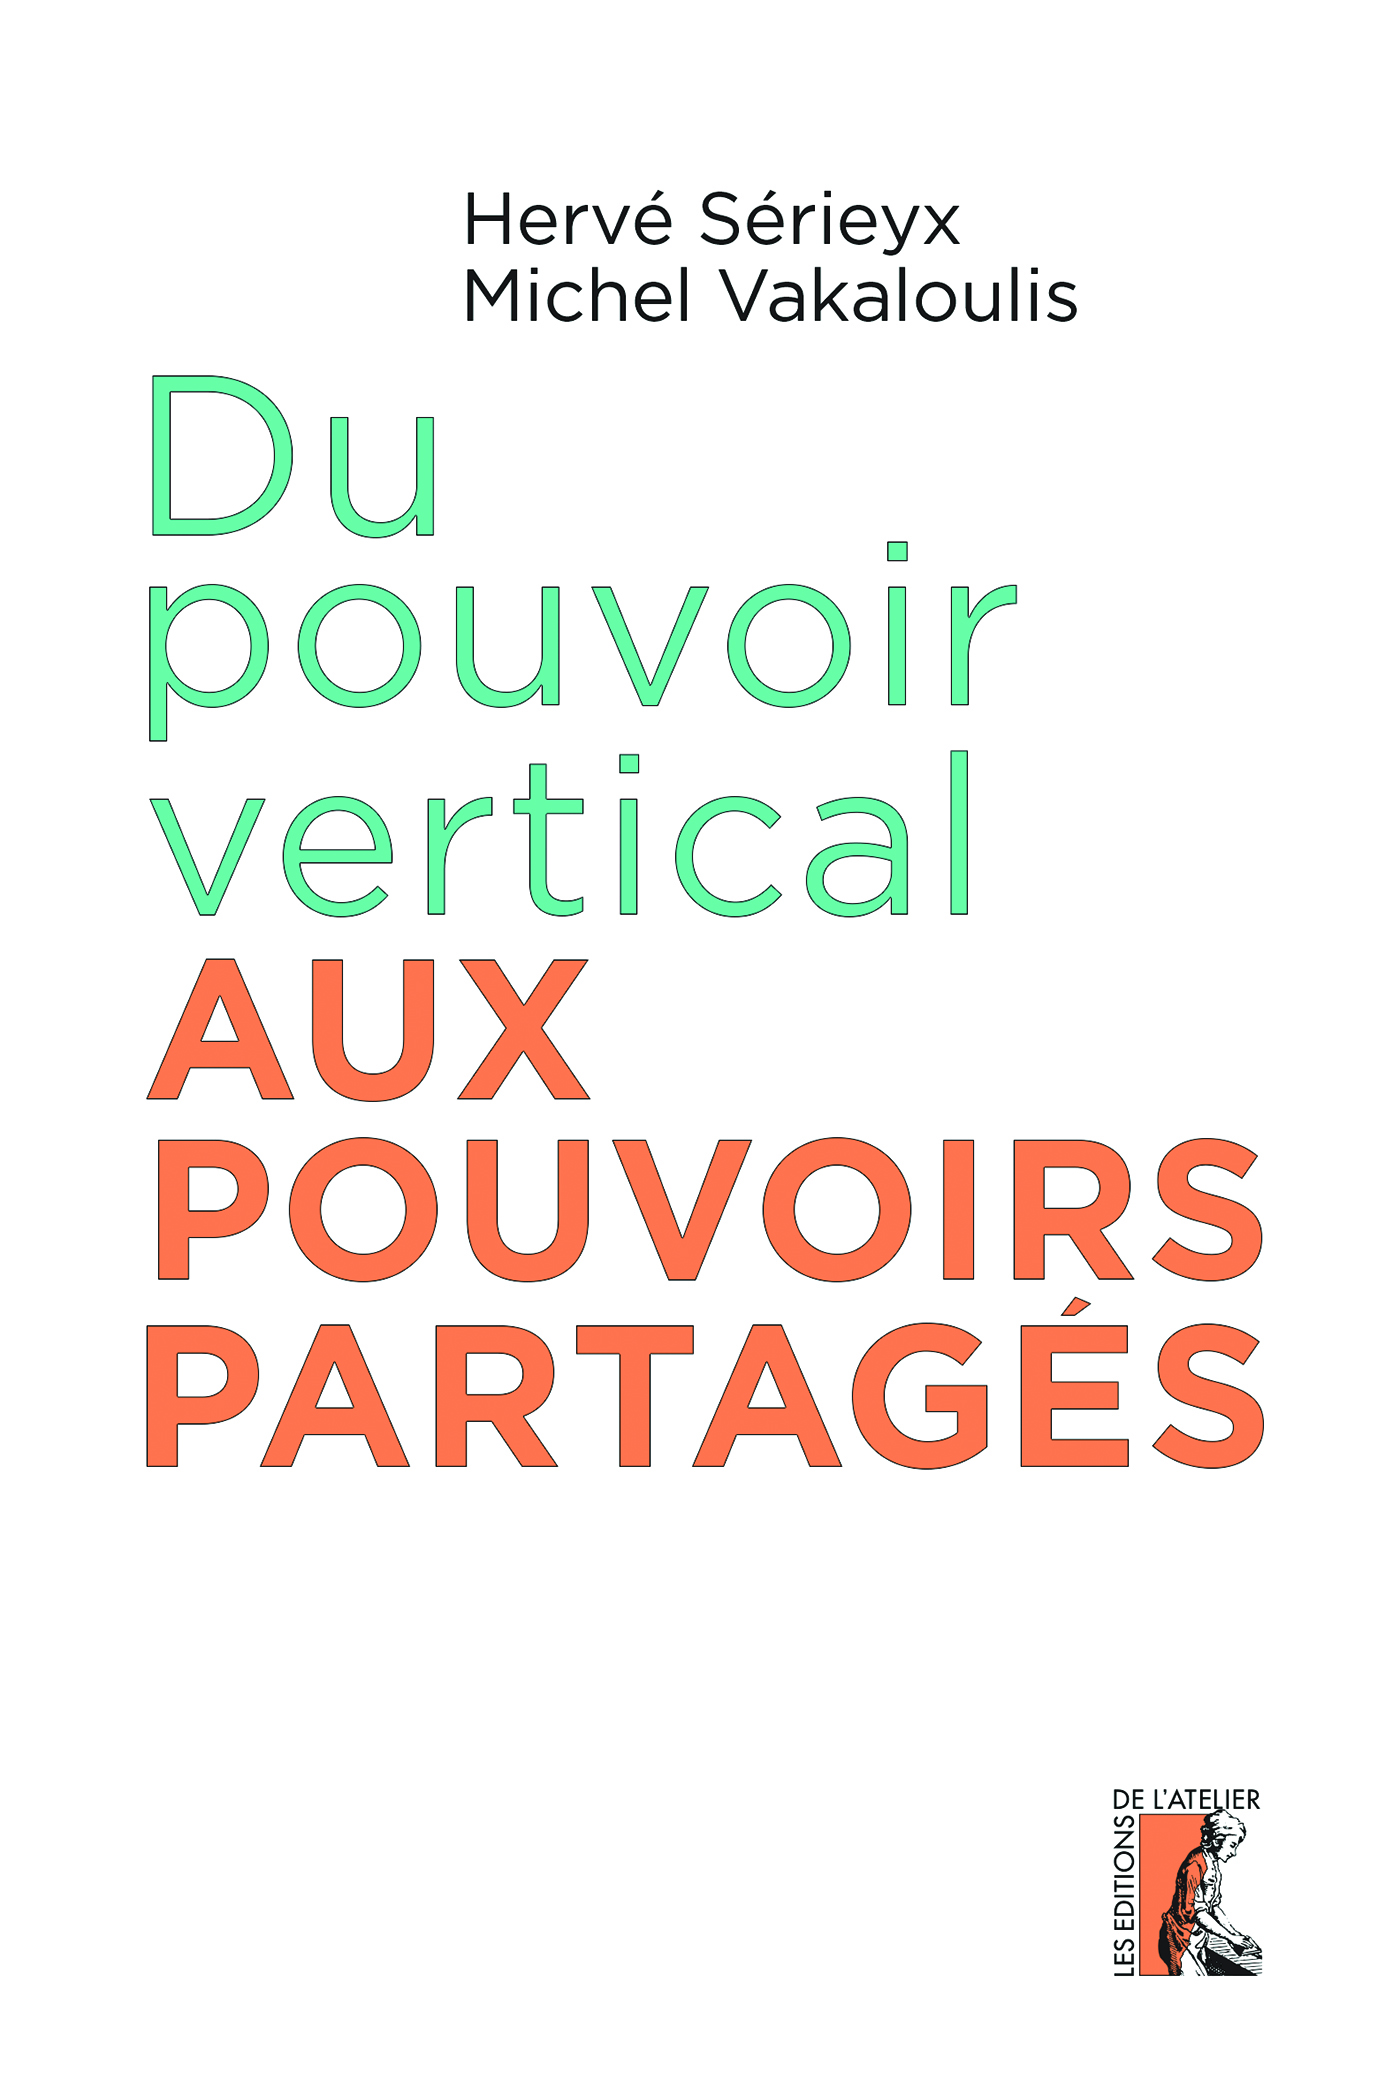 Du pouvoir vertical aux pouvoirs partagés - Hervé Sérieyx, Michel Vakaloulis - Éditions de l'Atelier